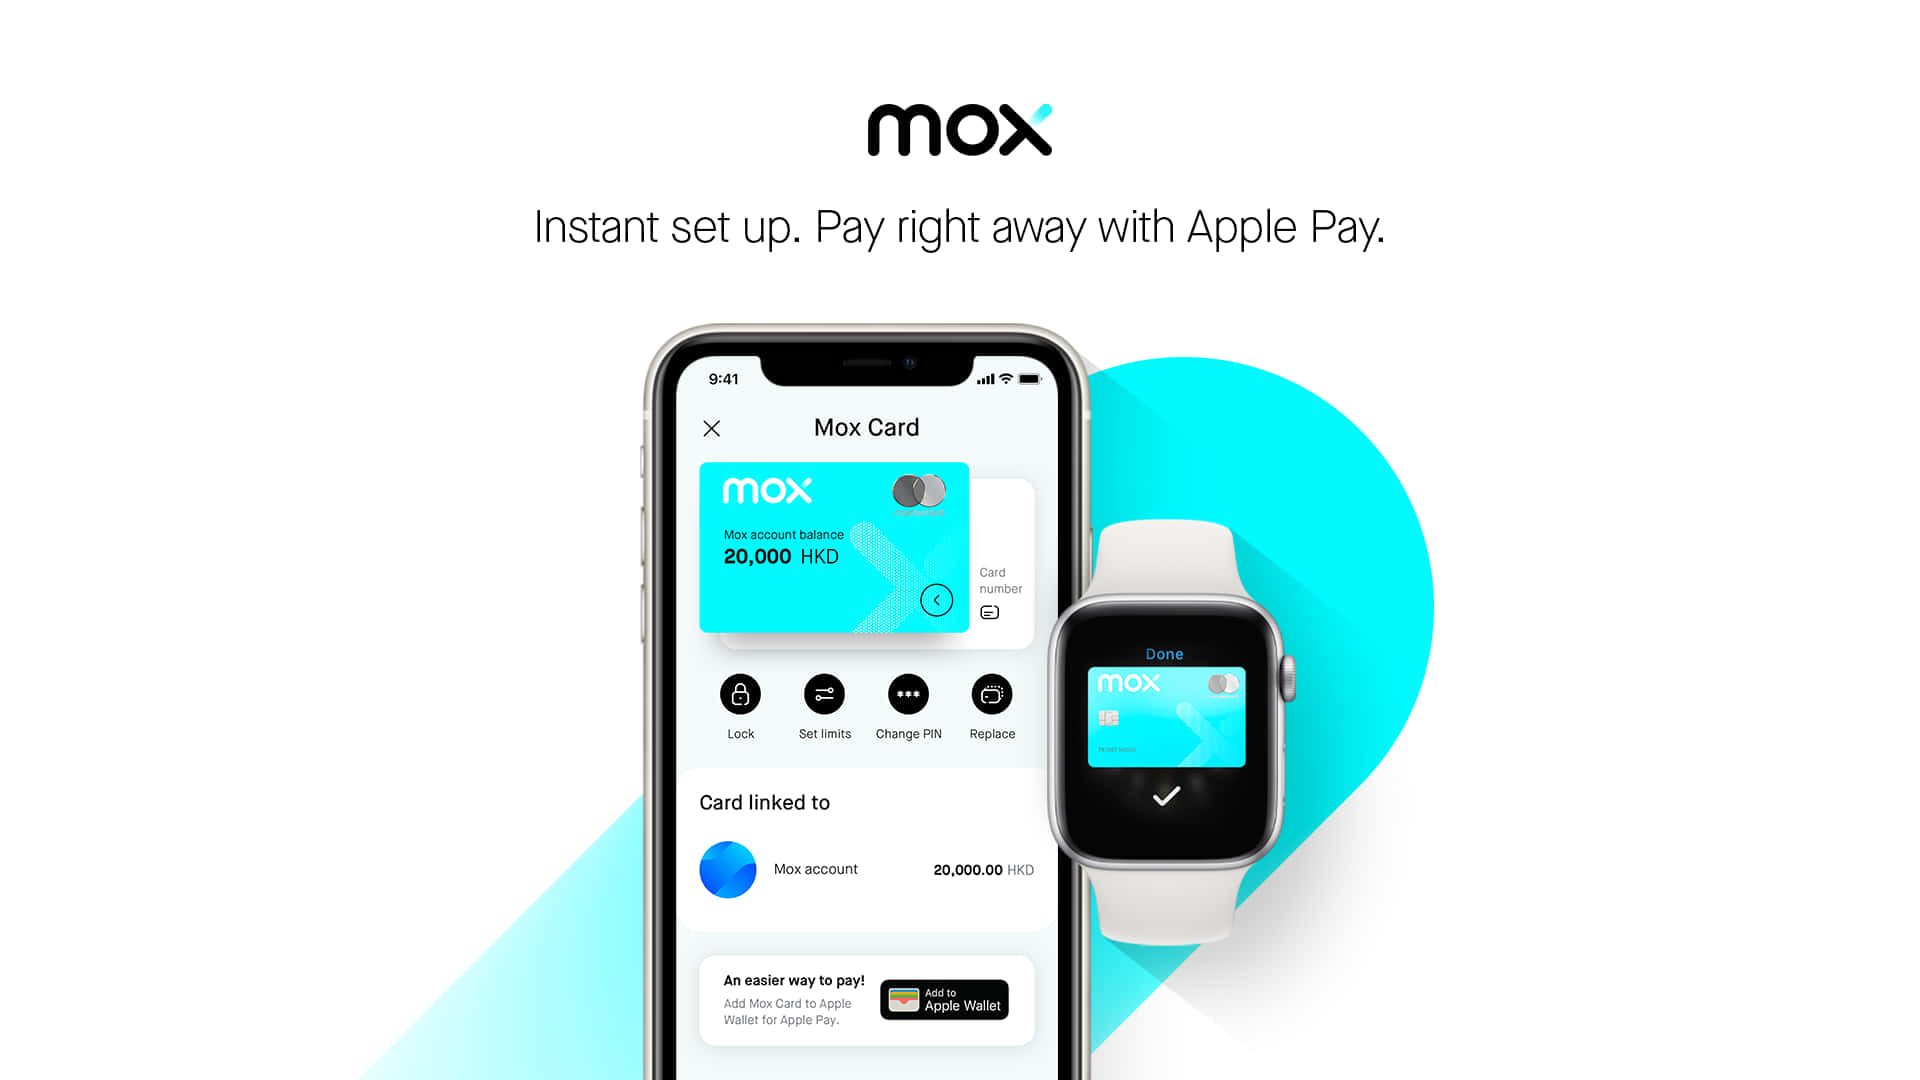 Mox giver Apple Pay-kunder et lommefyldt med smil. Wallpaper